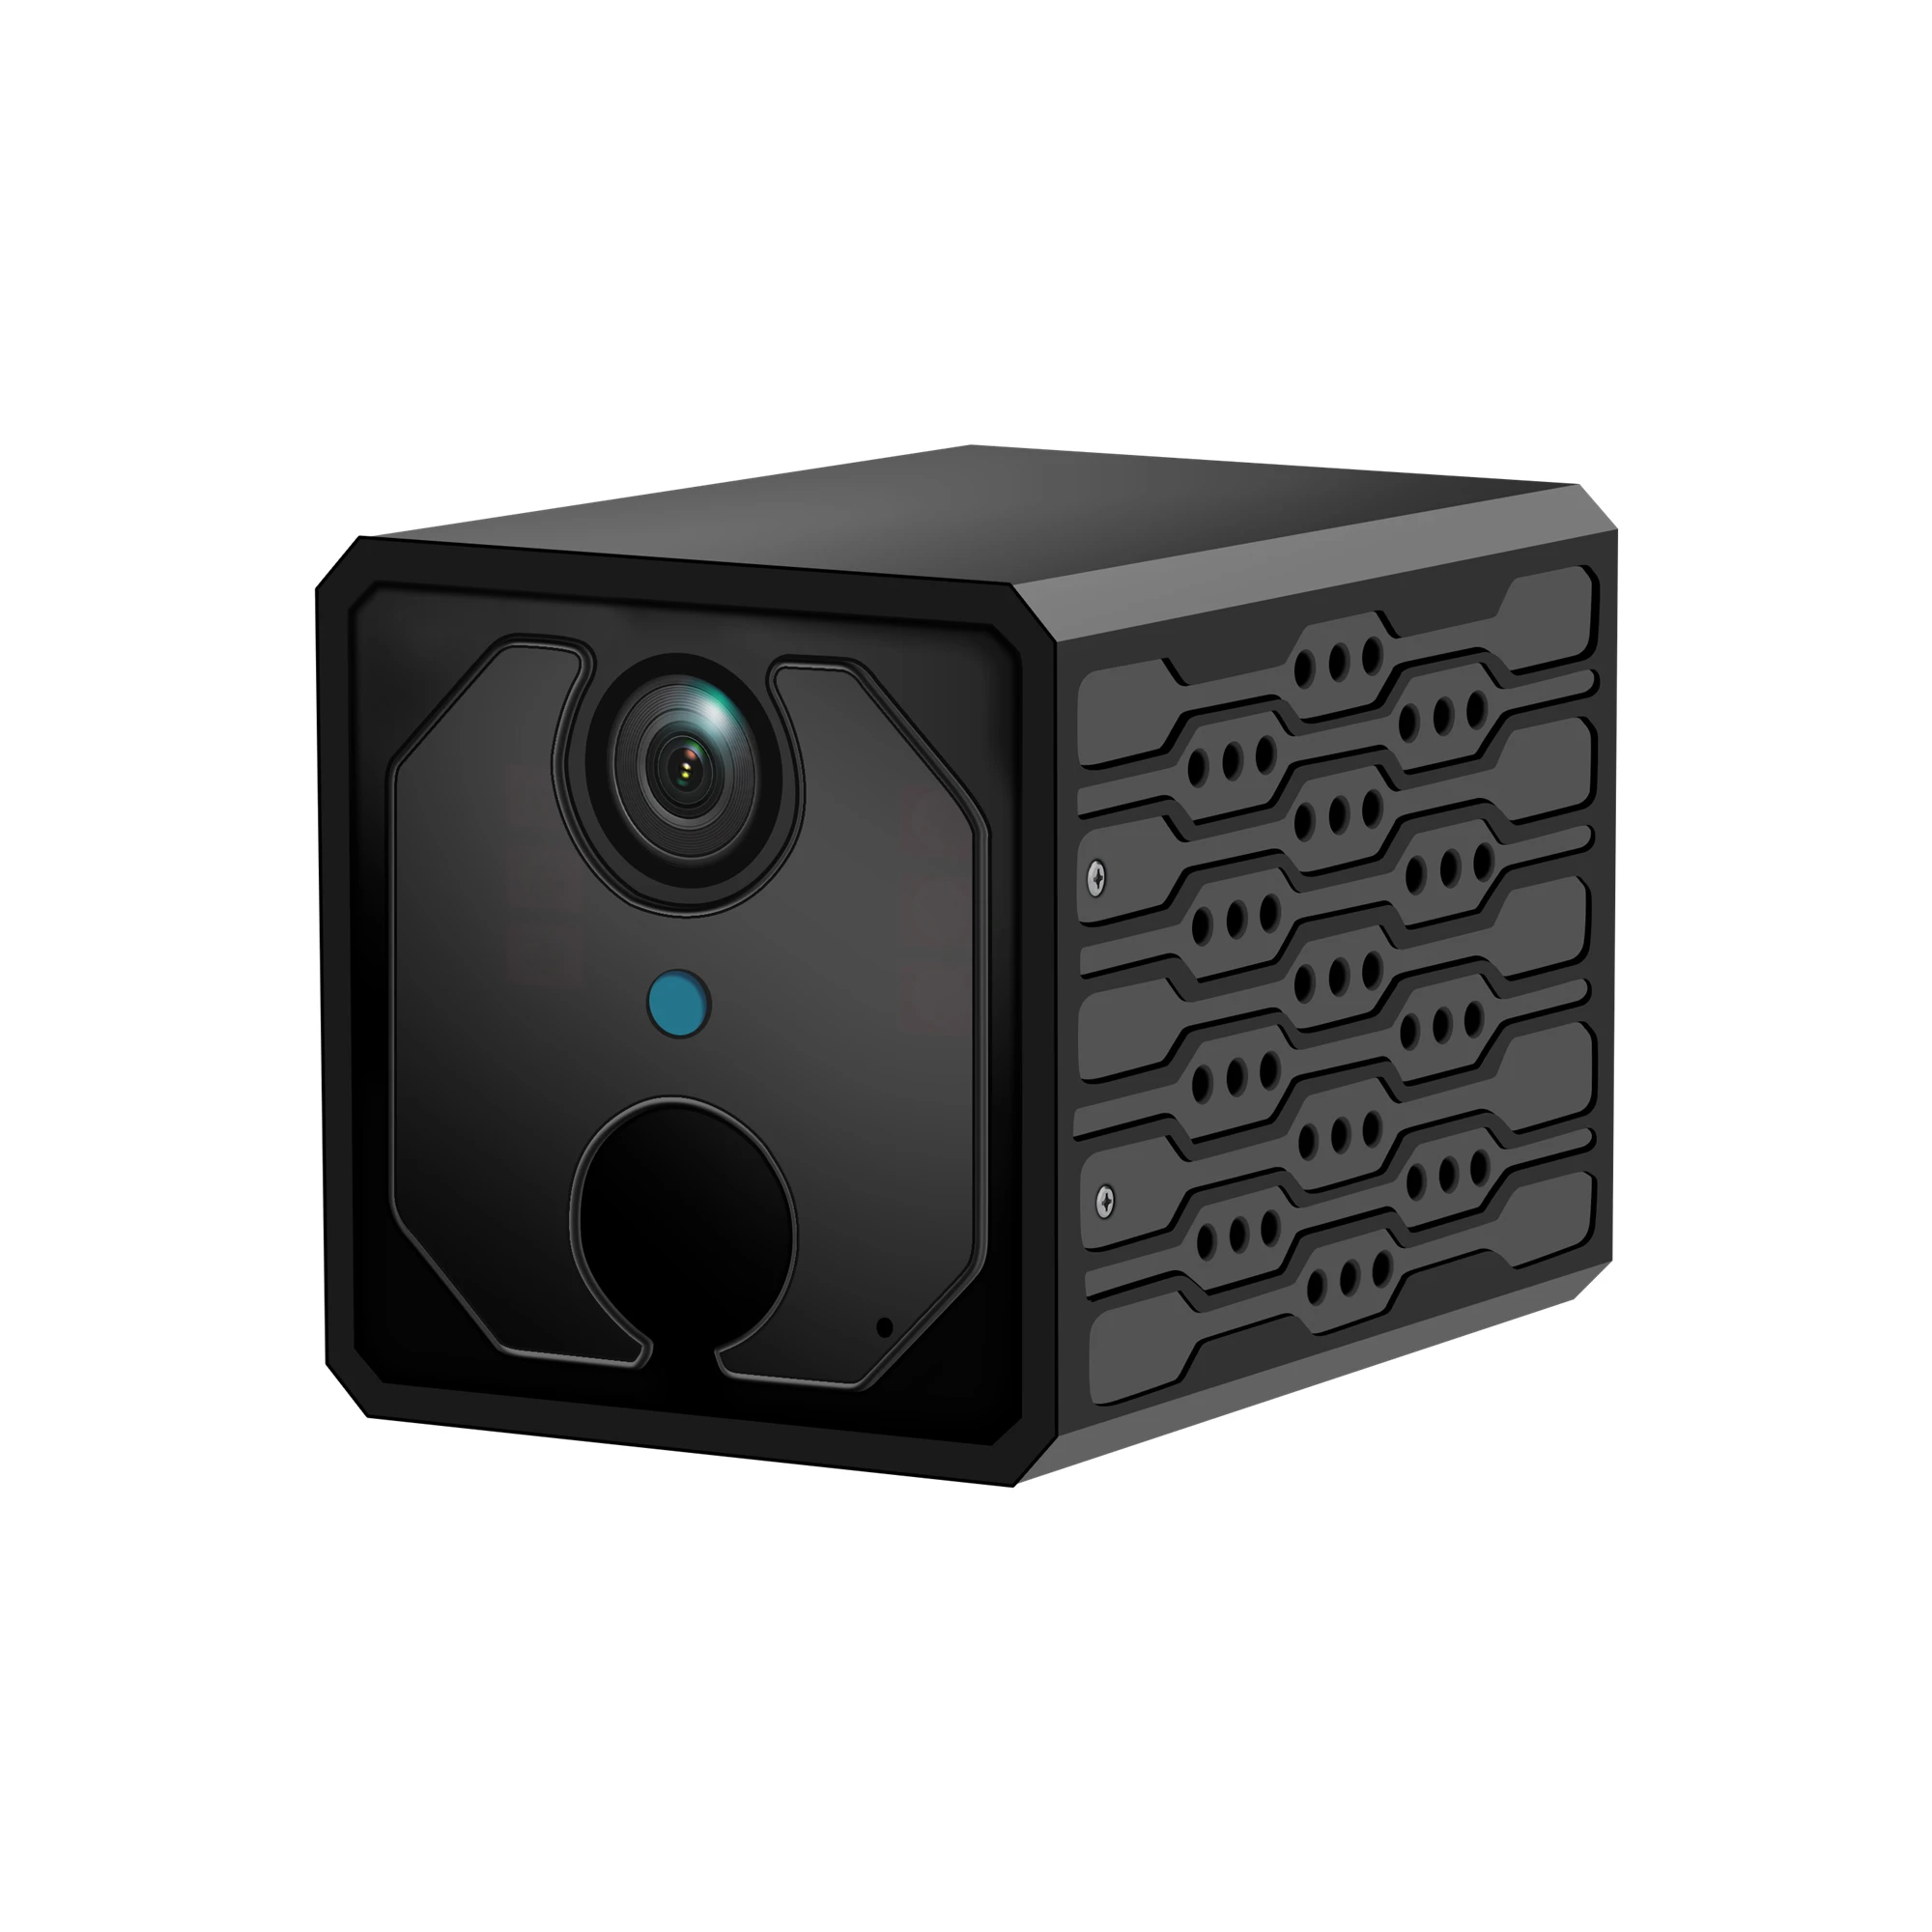 Мини камера V380 PRO ANYKA маленькая квадратная дешевая wifi домашняя портативная